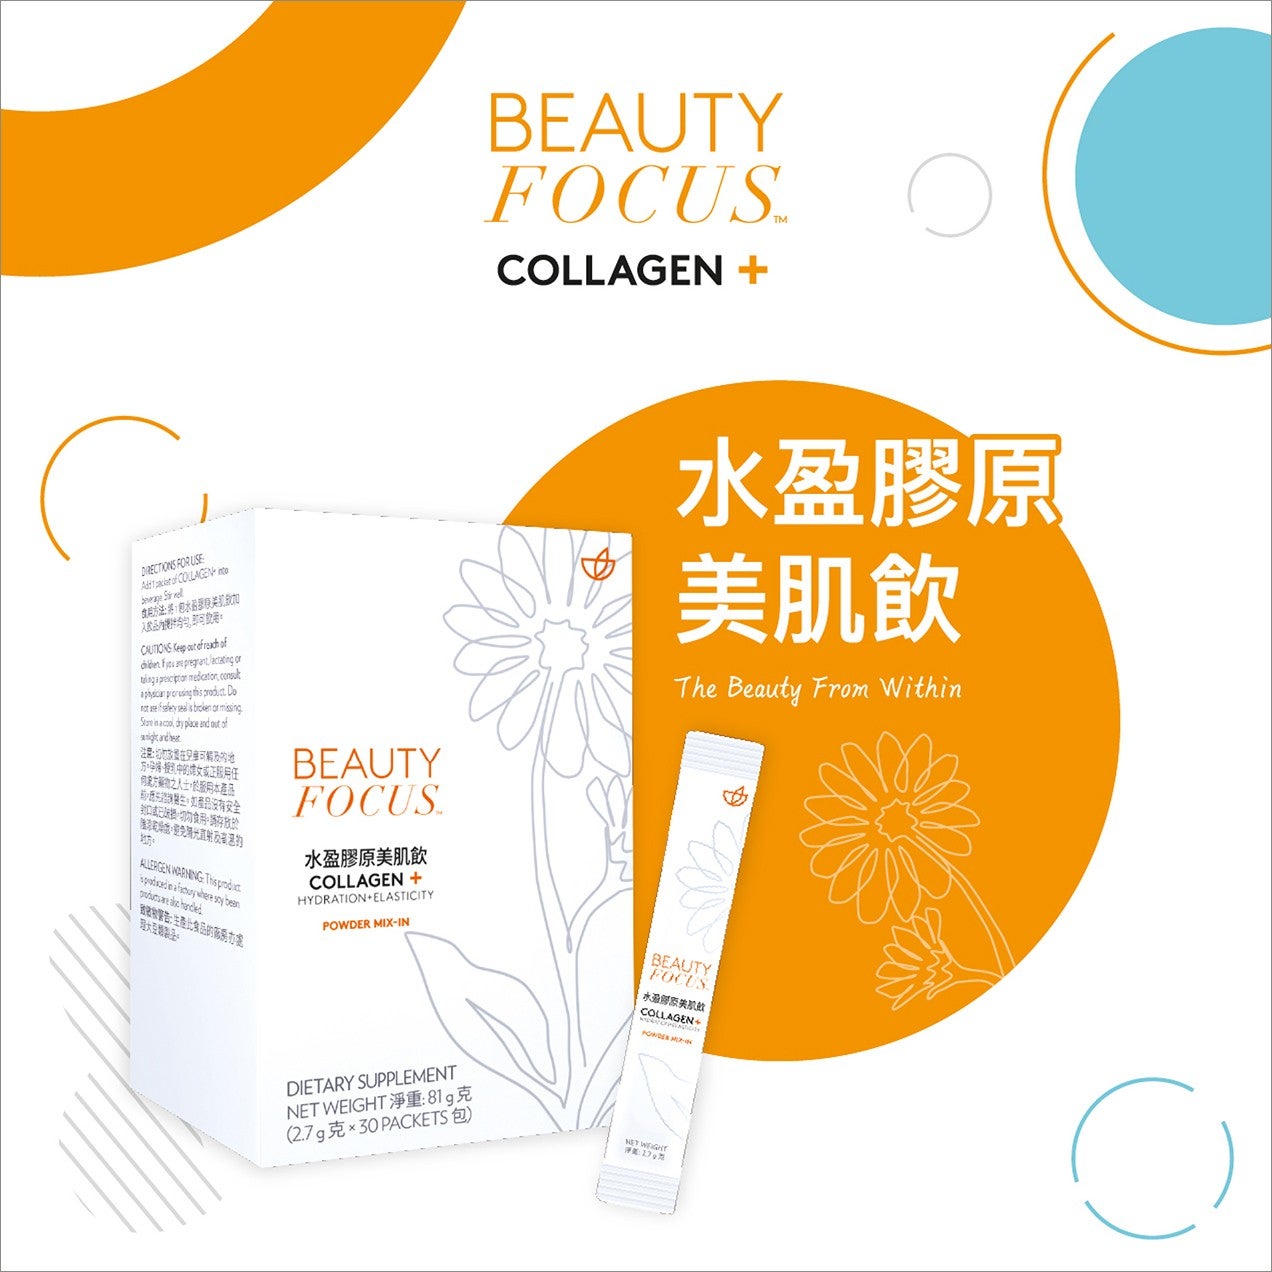 collagen-plus-leaflet-thumbnail